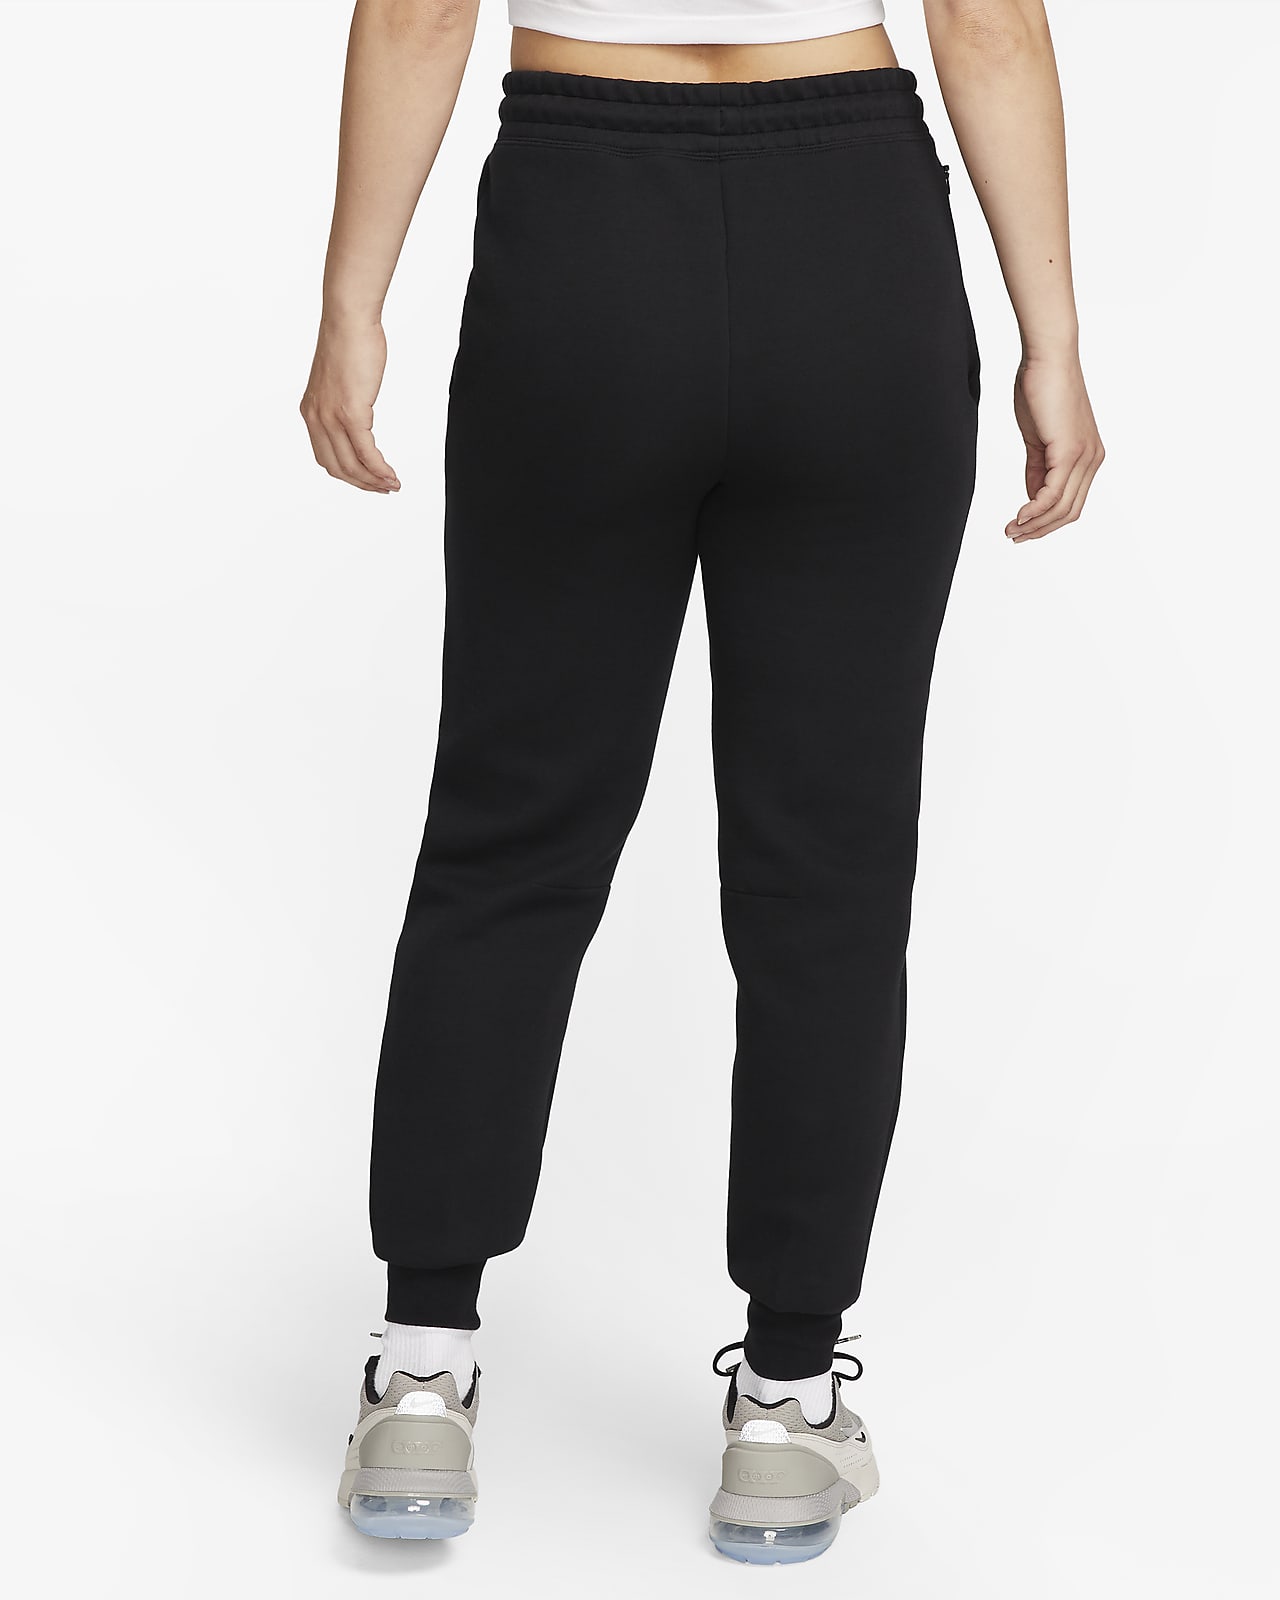 Women's Nike Sportswear Tech Fleece Pants in Grey